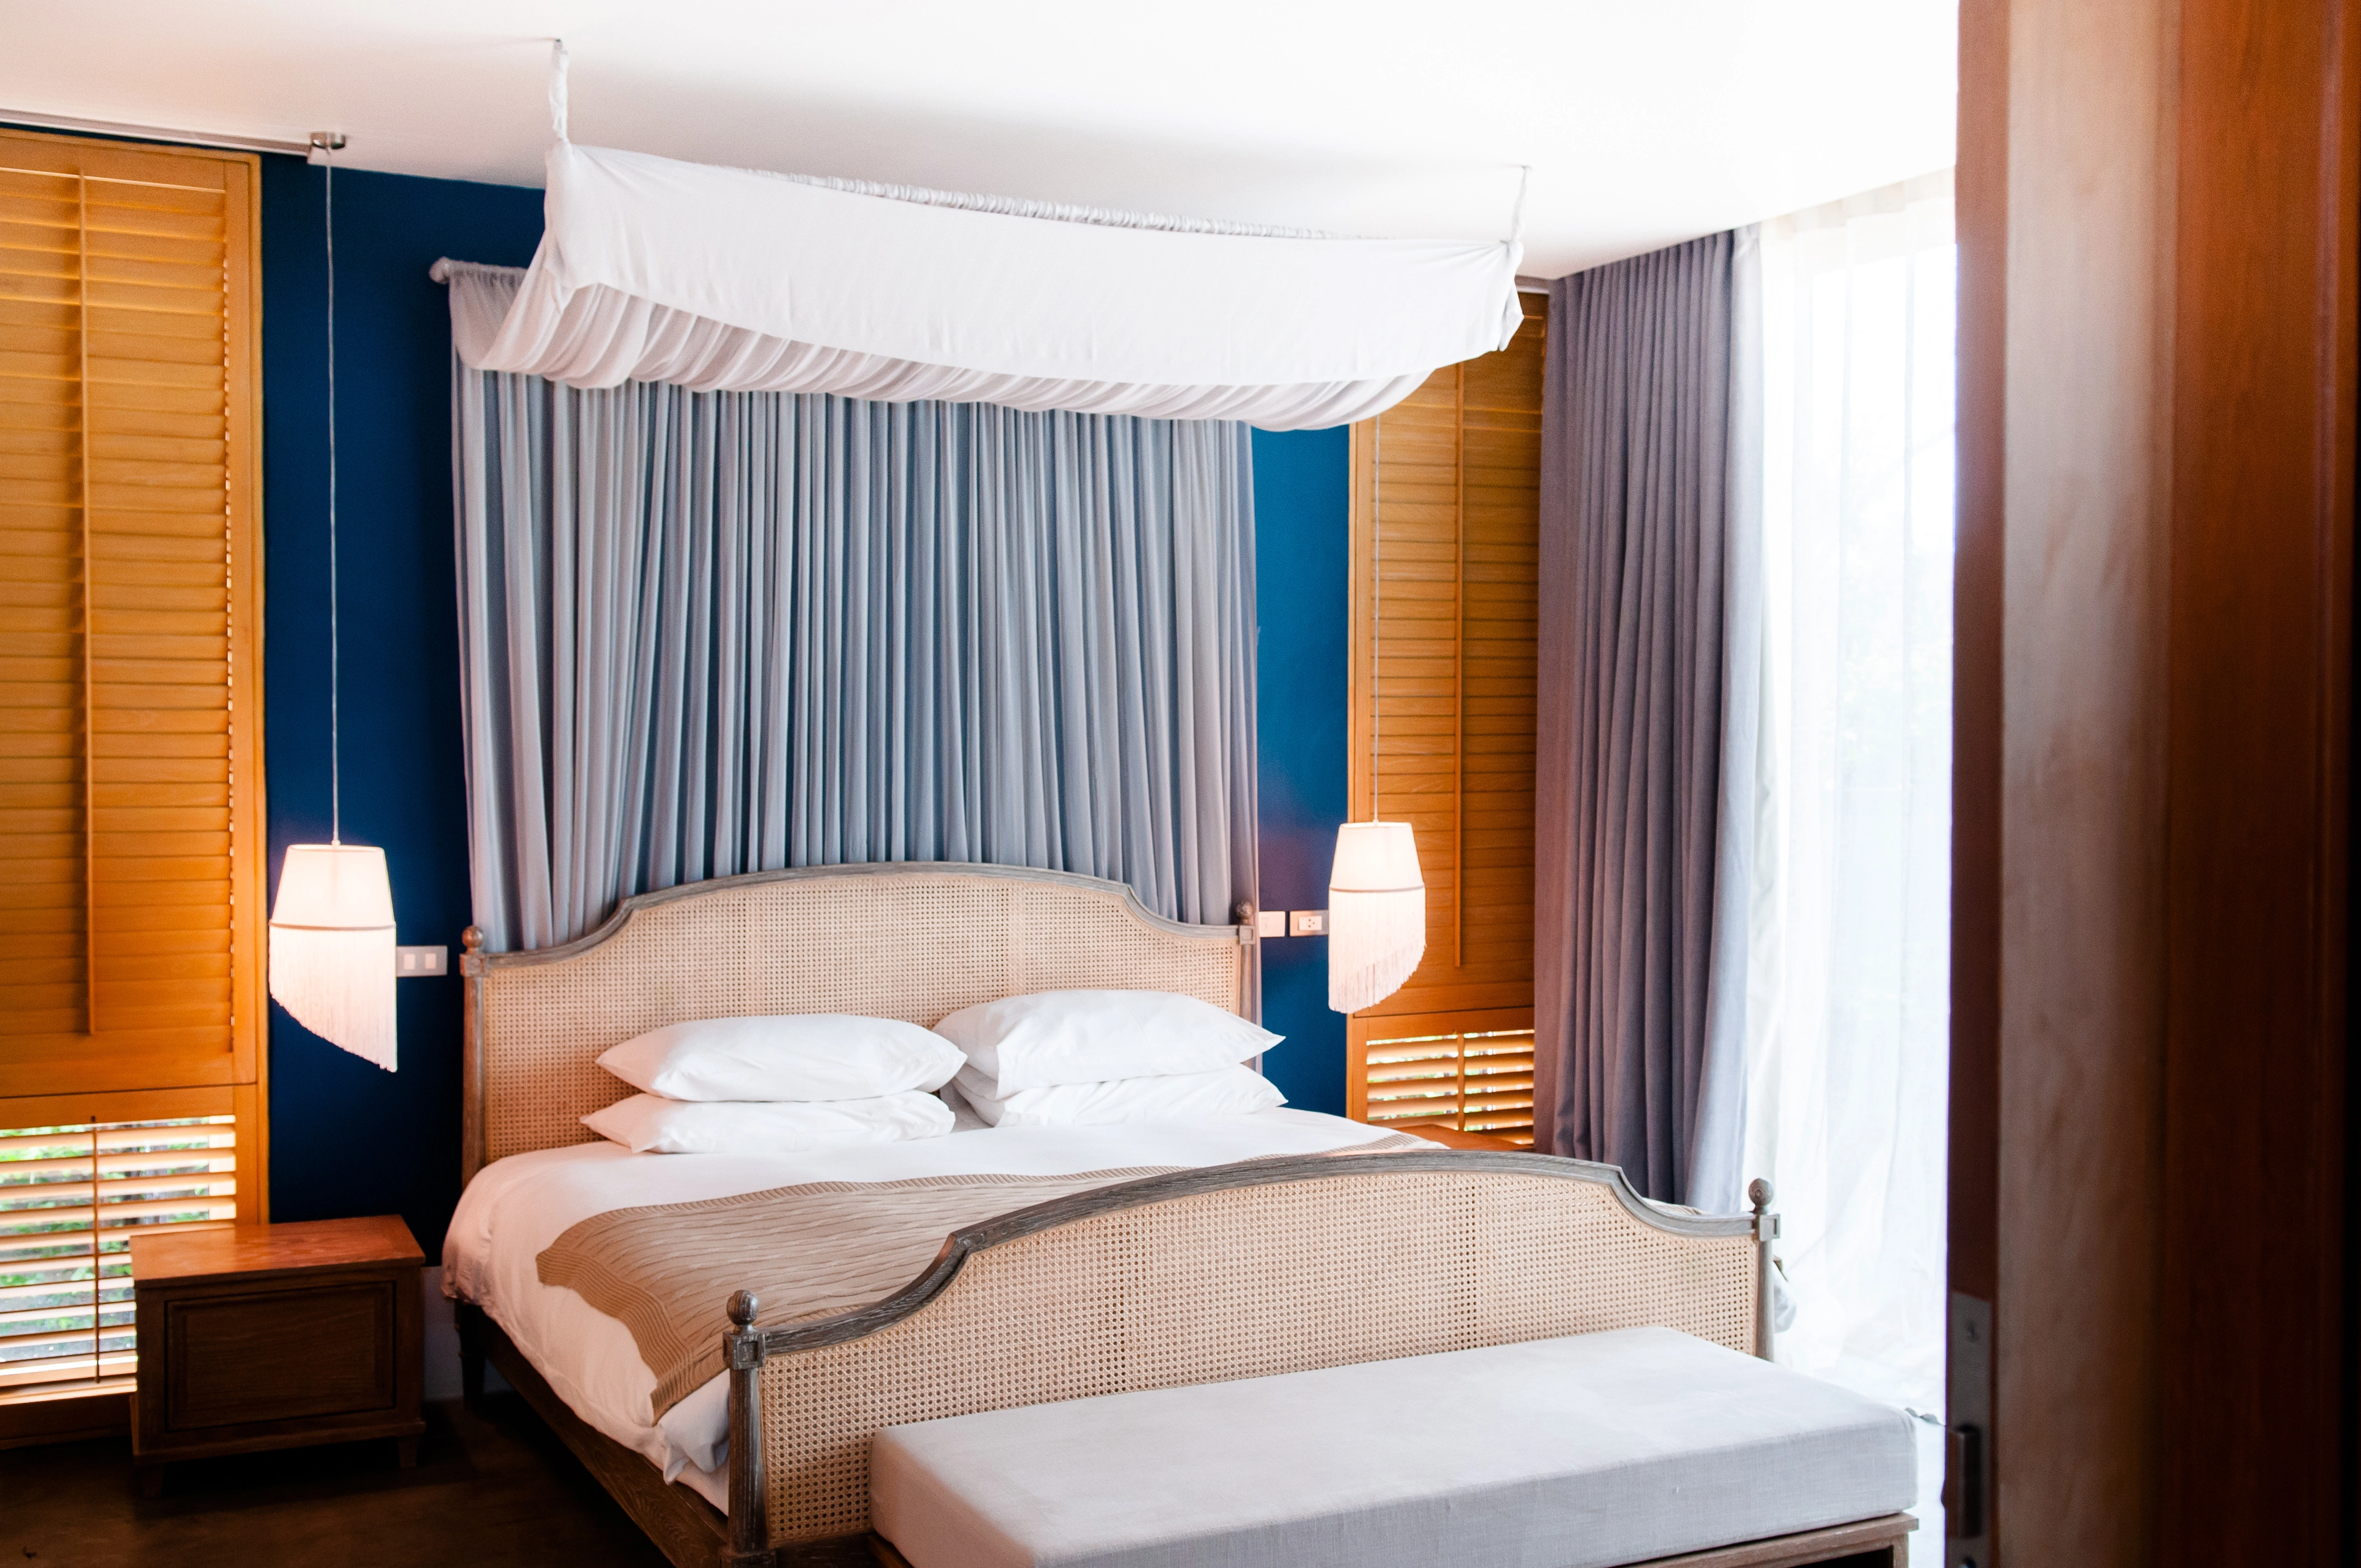 Inspiracja prezentująca sypialnię w kolorze brązowym z łóżkiem z baldachimem, styl kolonialny. Element charakterystyczny: łóżko z baldachimem